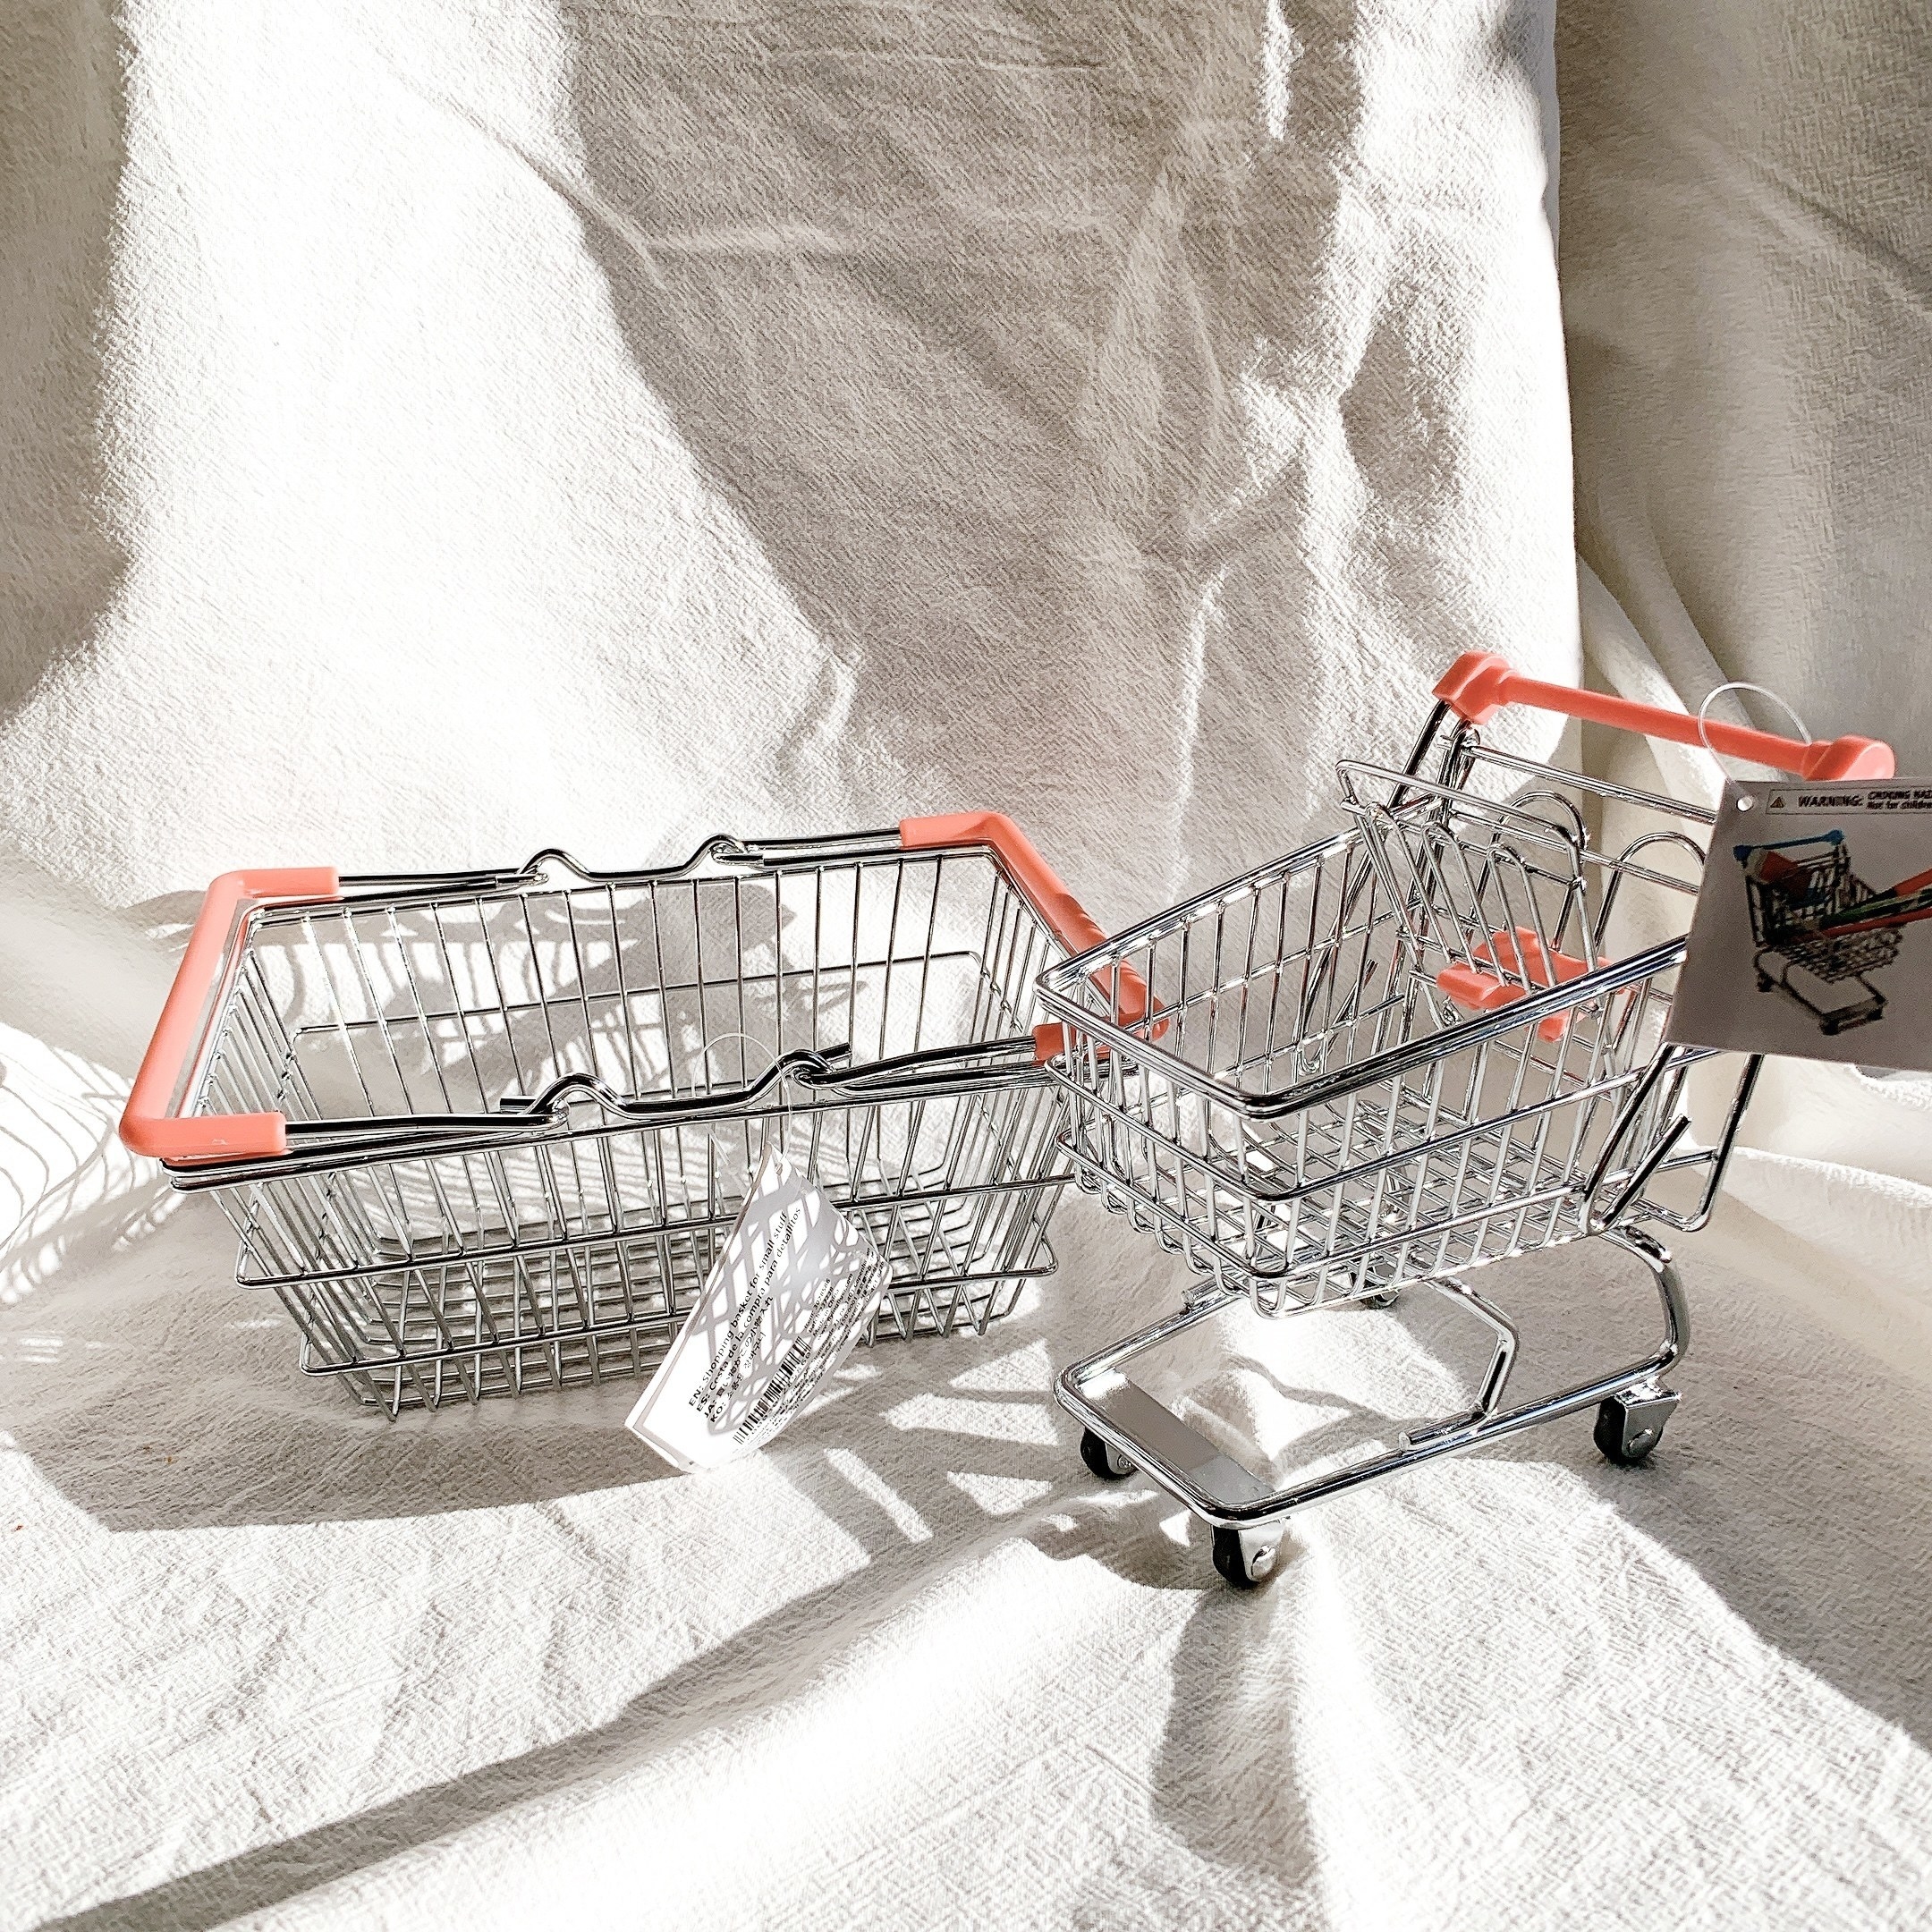 フライングタイガー（Flying Tiger Copenhagen）のおすすめおもしろ雑貨「ショッピングバスケット」と「ショッピングカート」